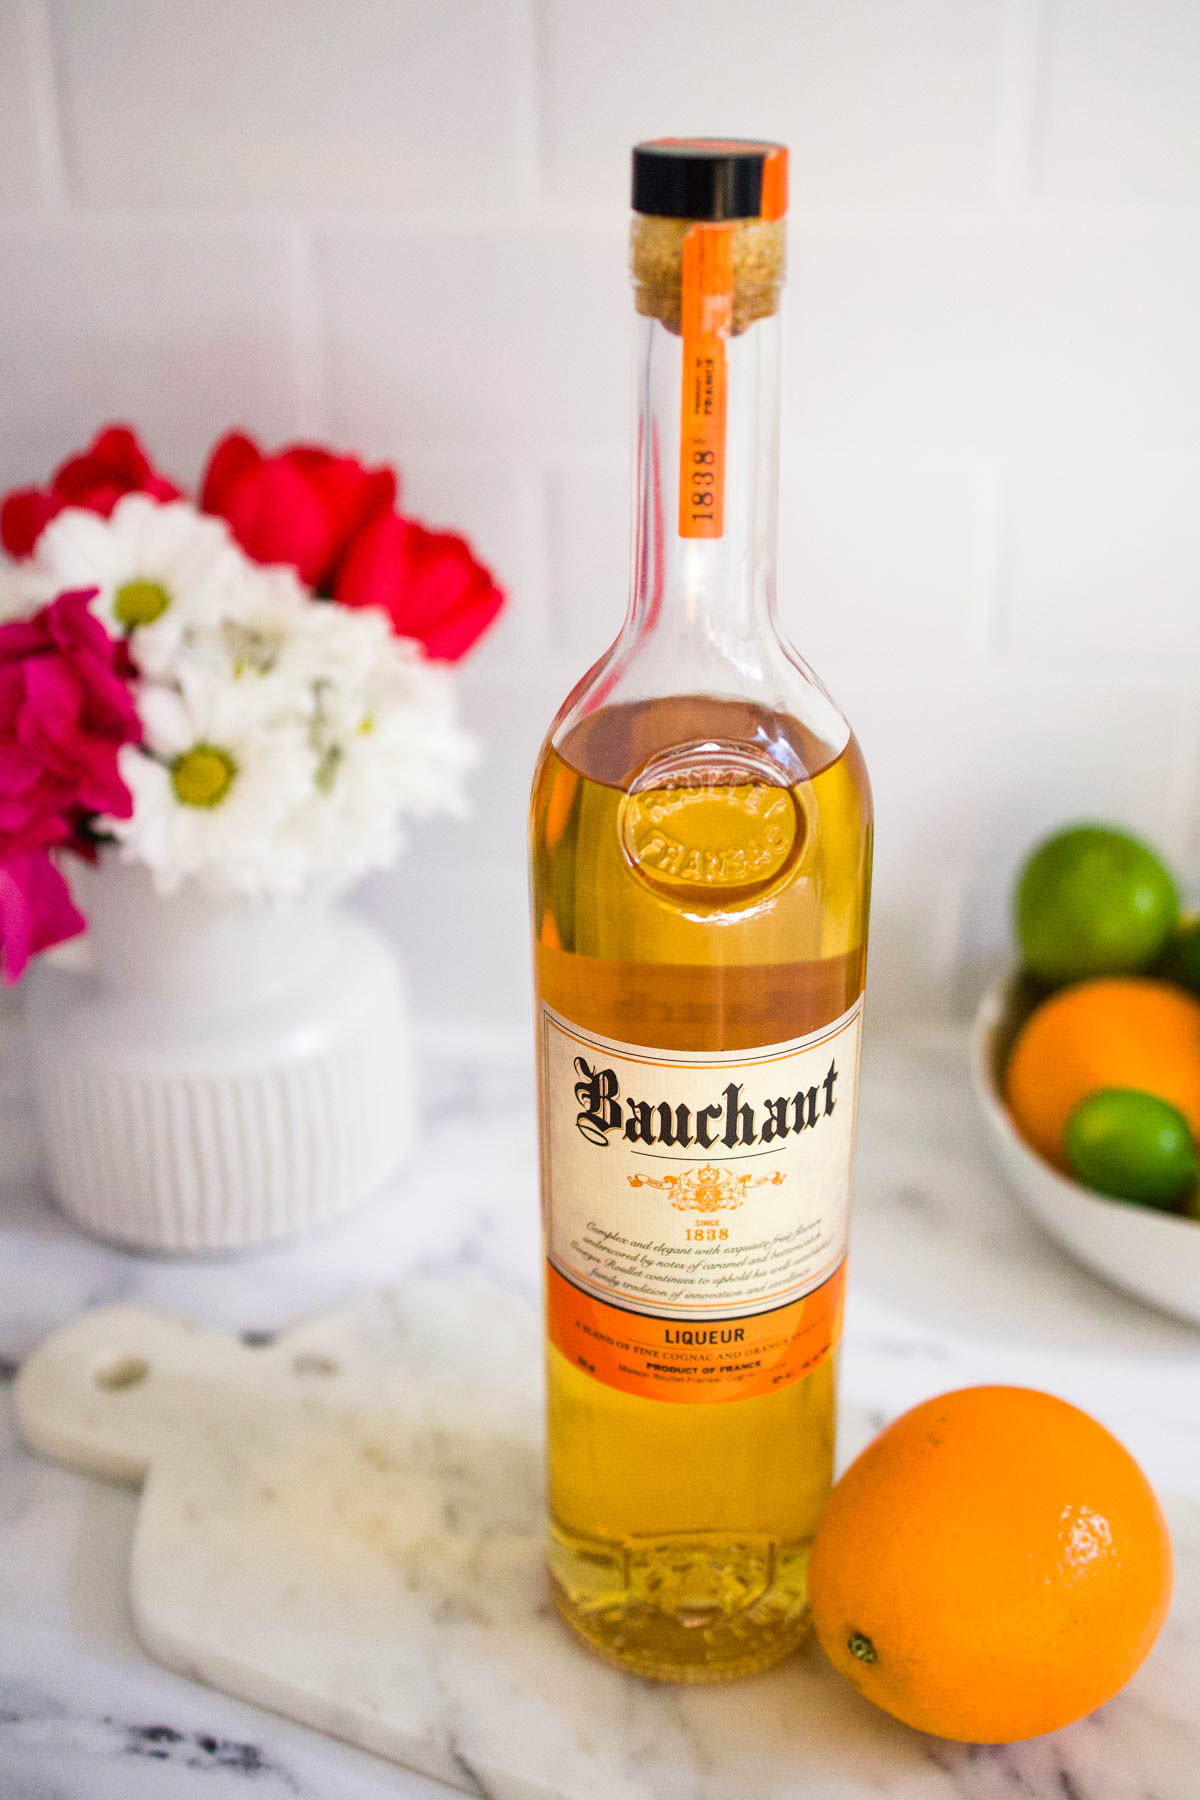 A bottle of Bauchant orange liqueur for margaritas.